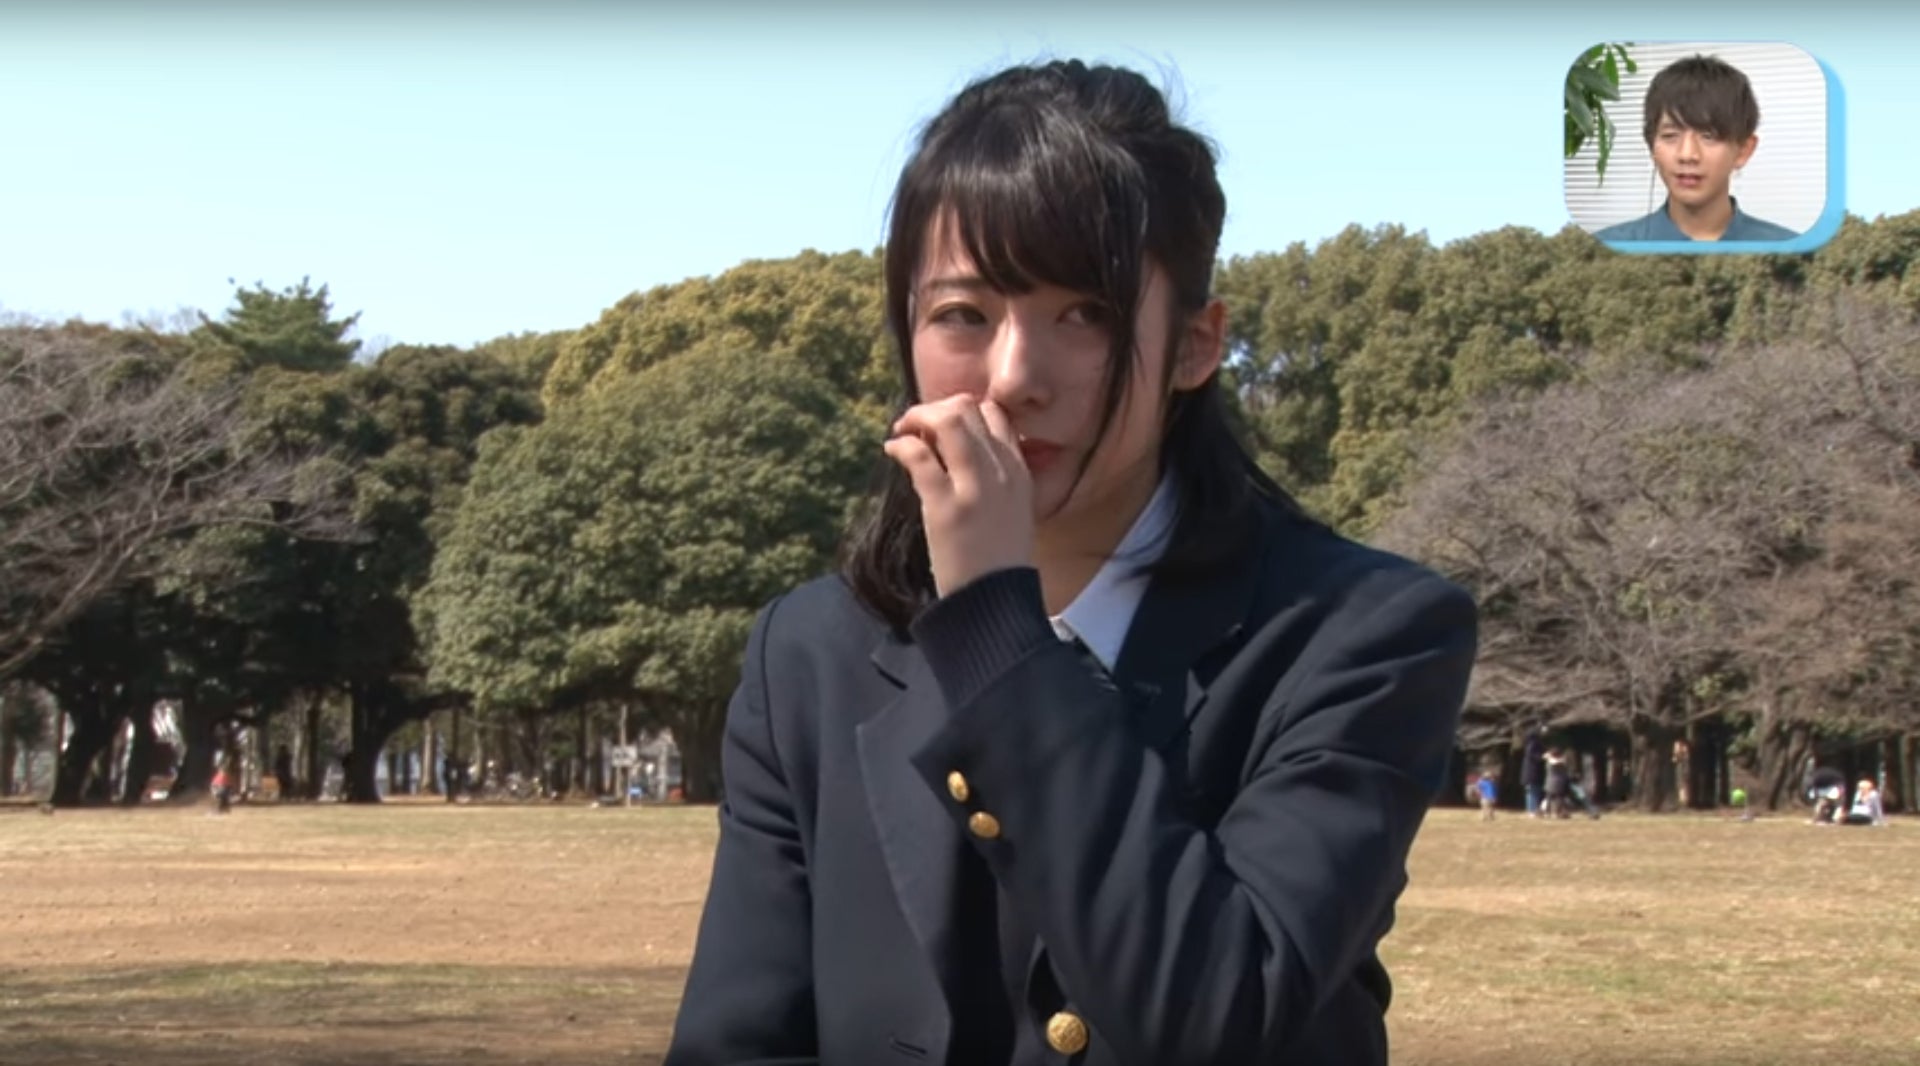 画像2/8) “日本一かわいい女子高生”候補生、泣き出すメンバーが続出